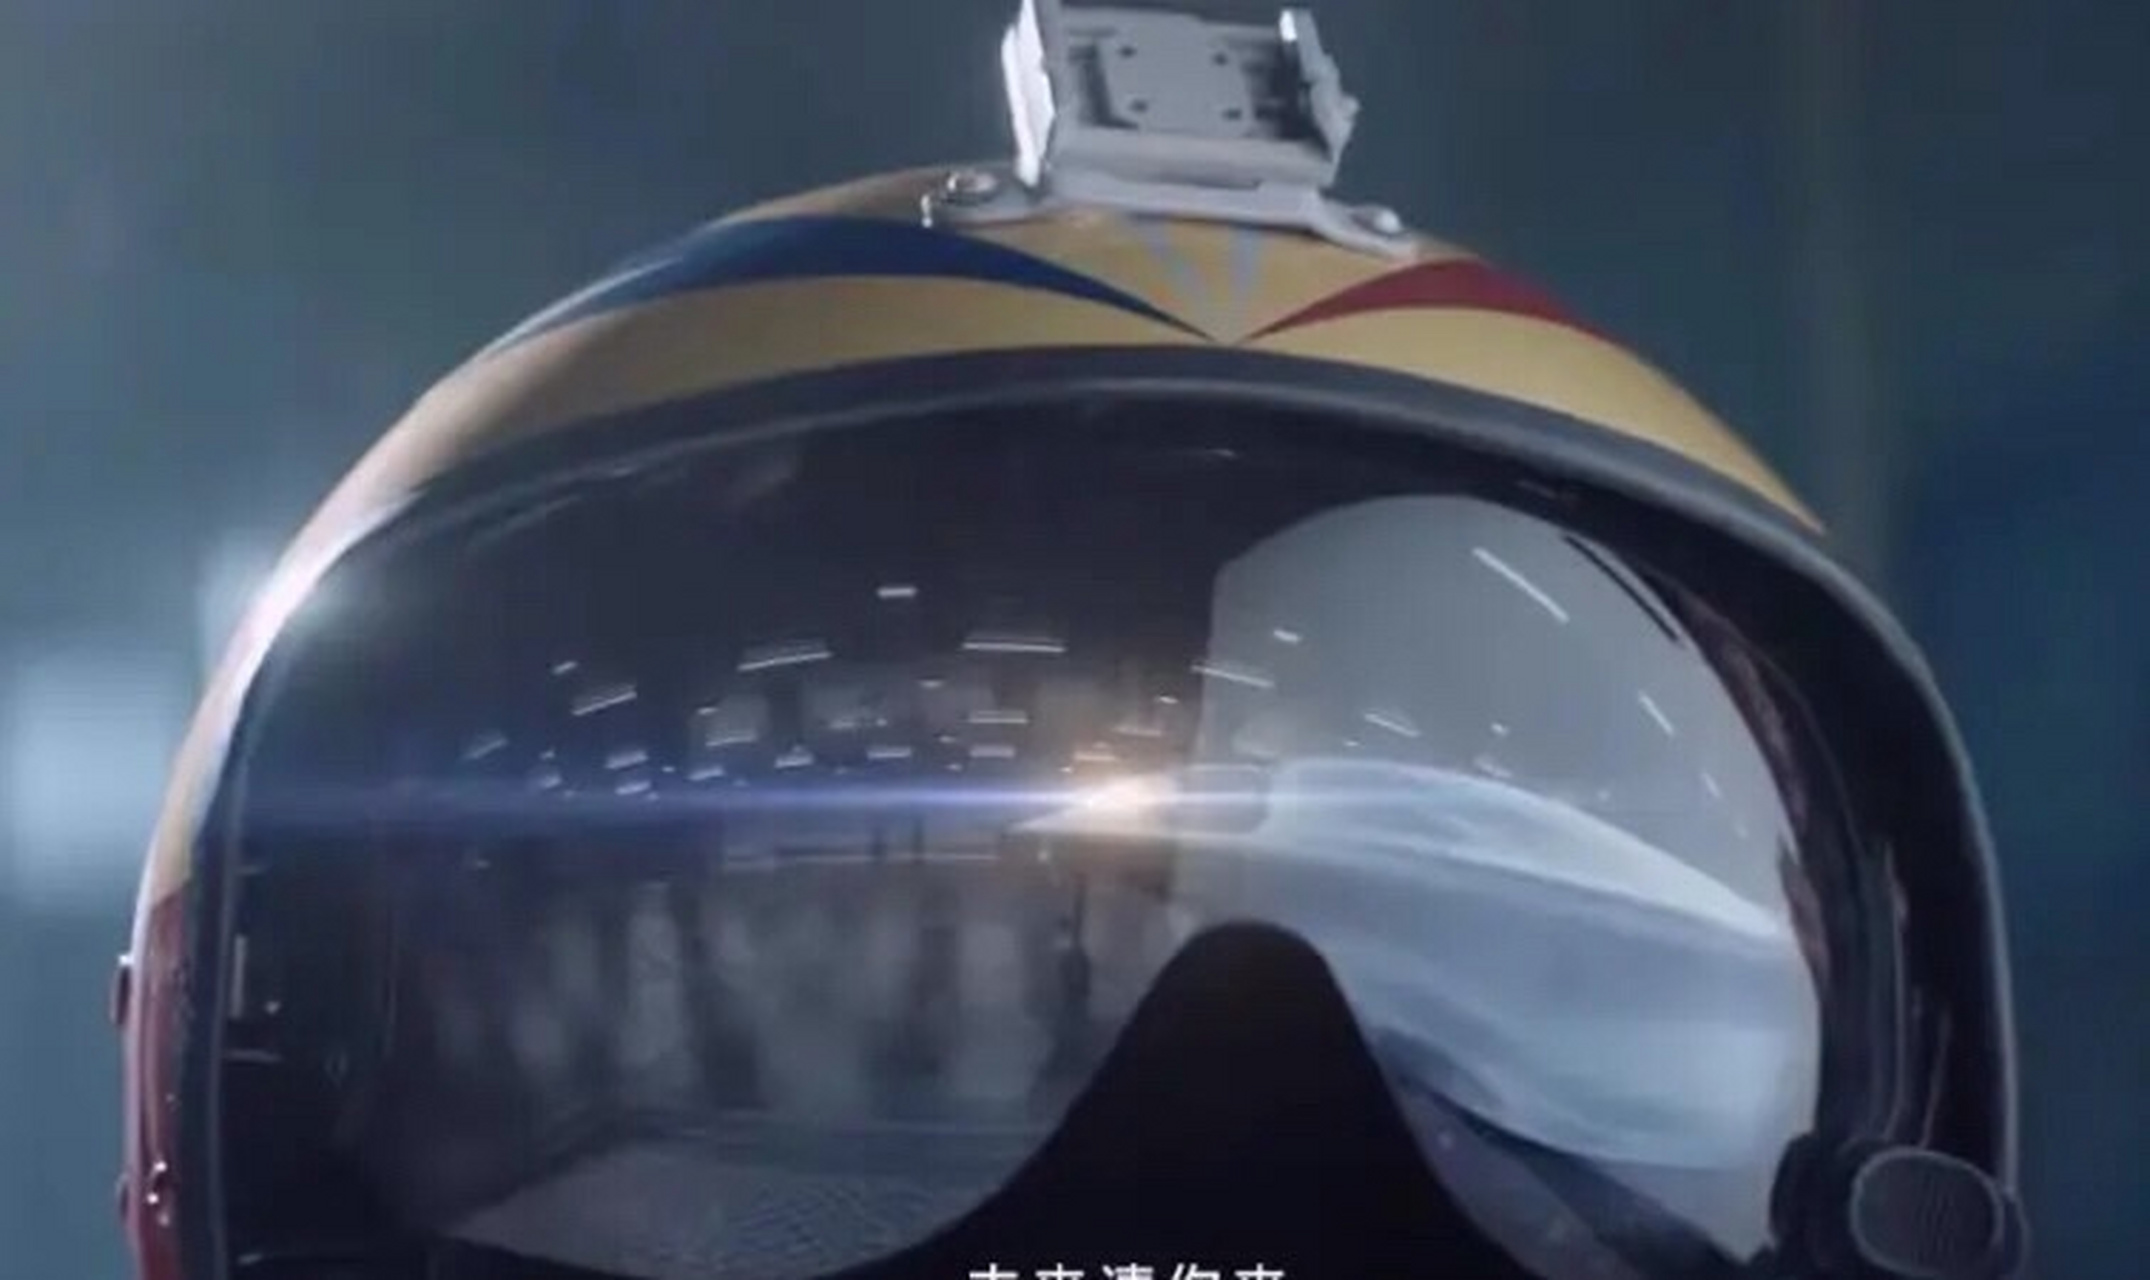 近日,2021年度空军招飞宣传片在网上引起热议,吴京和易烊千玺两位演艺